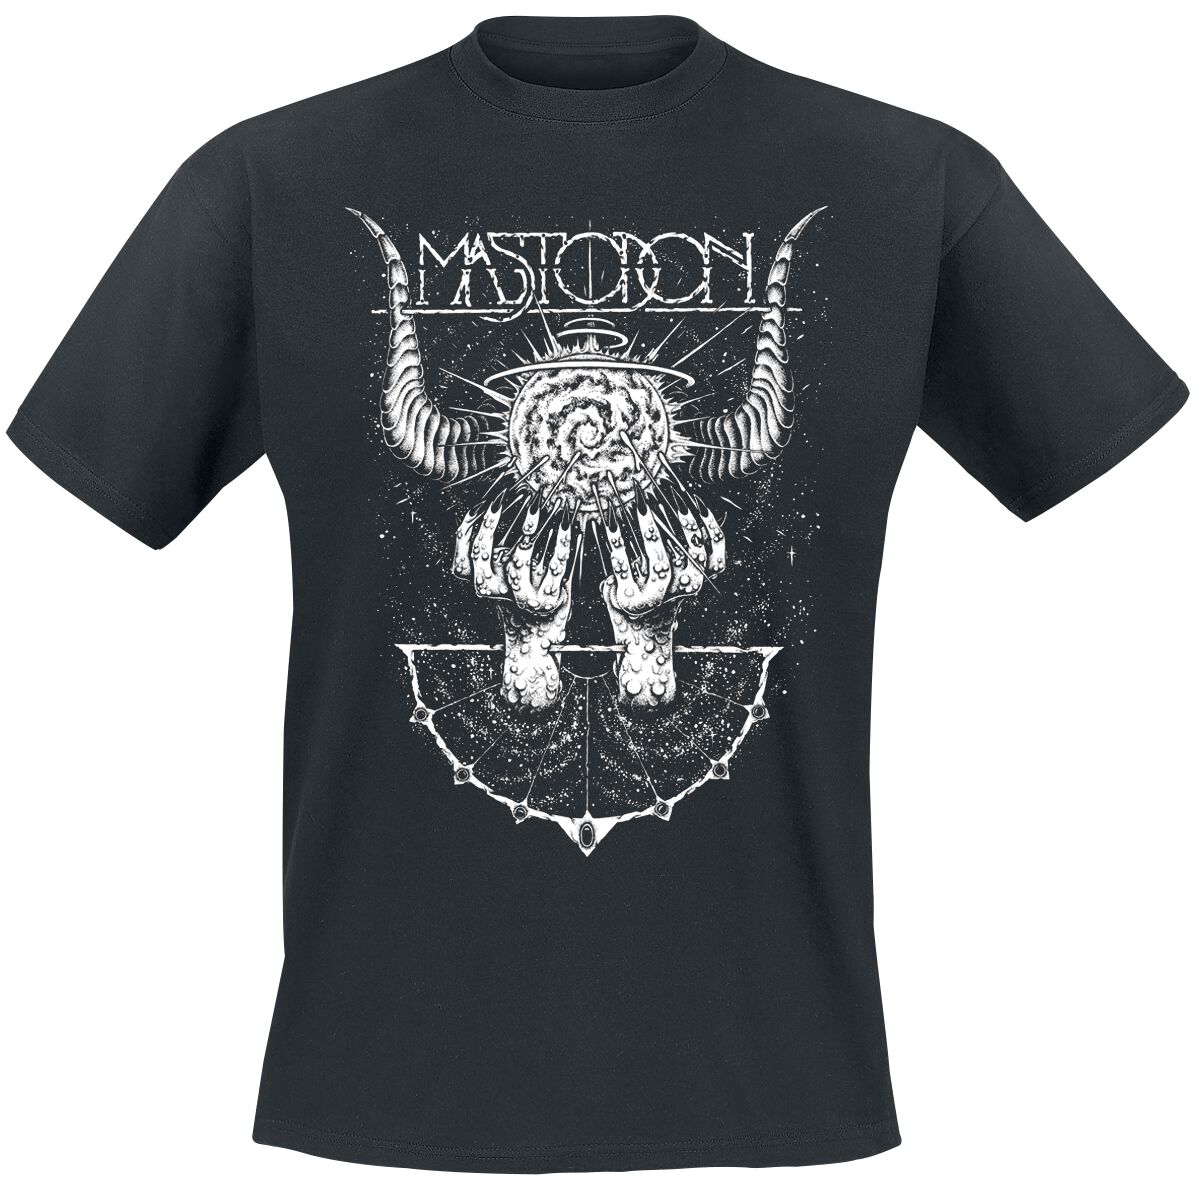 Mastodon T-Shirt - Horned Cosmos - S bis 4XL - für Männer - Größe XL - schwarz  - Lizenziertes Merchandise!